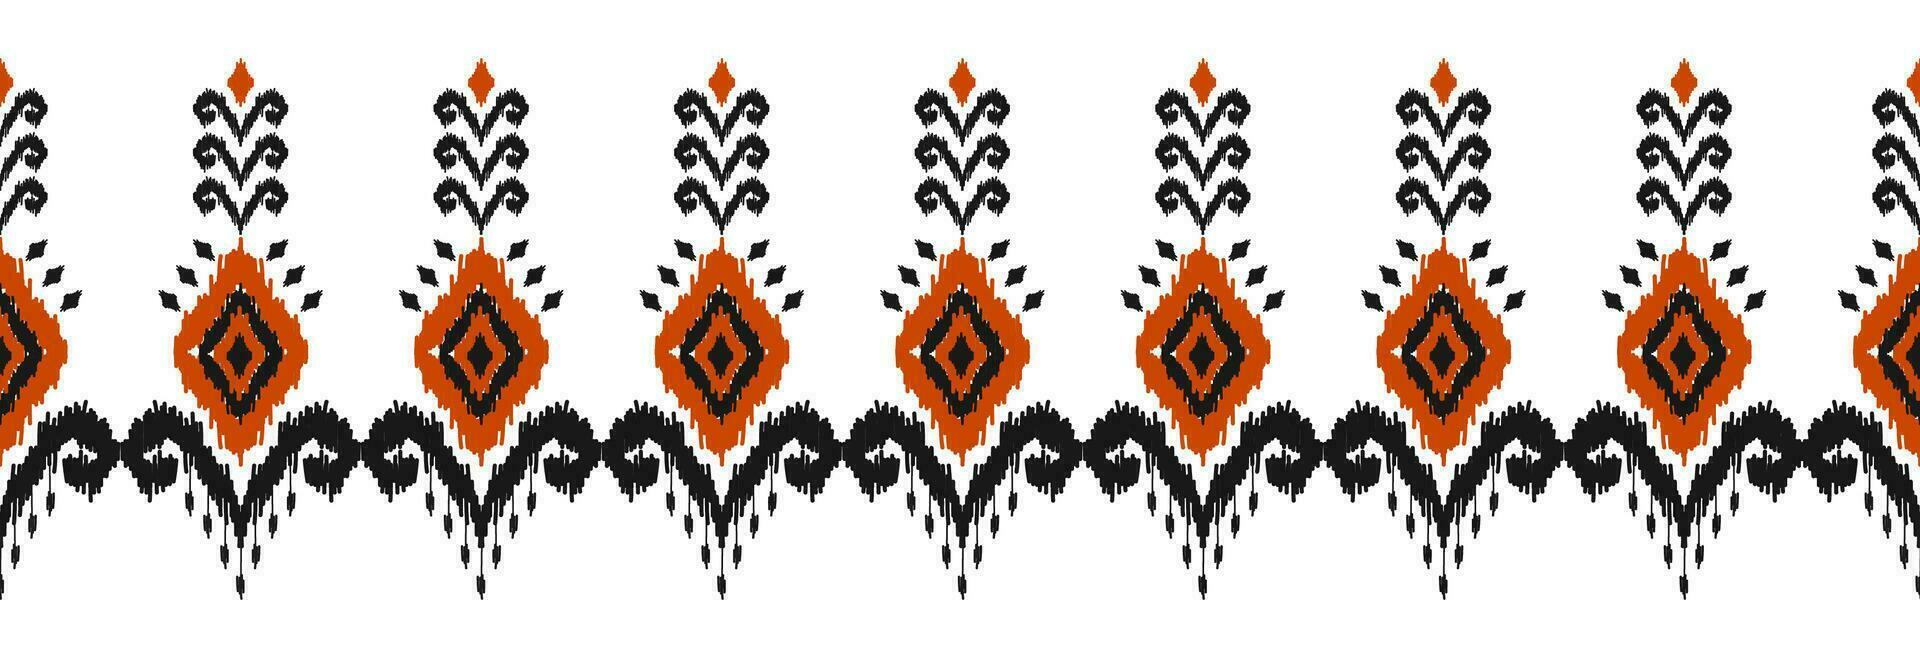 frontera étnico ikat modelo Arte. gente bordado, y mexicano estilo. azteca geométrico ornamento impresión. diseño para fondo, ilustración, tela, ropa, textil, imprimir, batik. vector